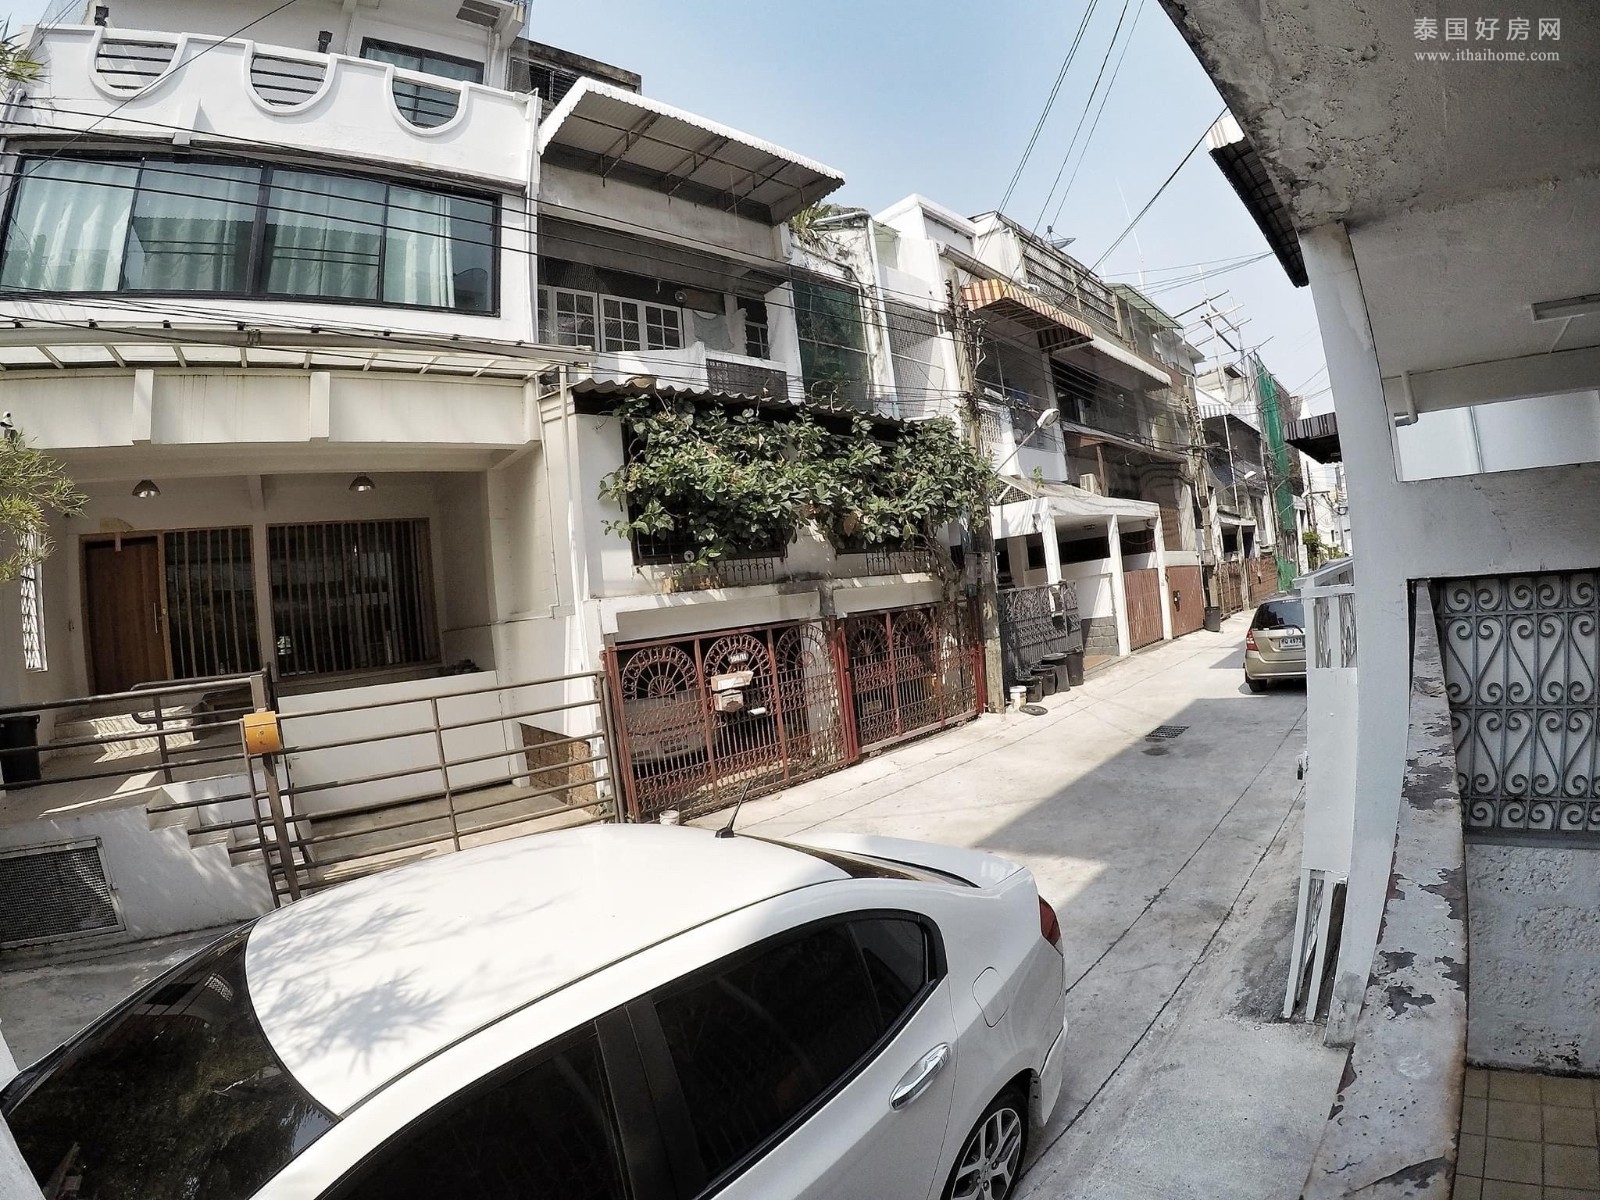 【推荐】曼谷 Sukhumvit 38 联排别墅出售 3卧150平米 售1,690万泰铢